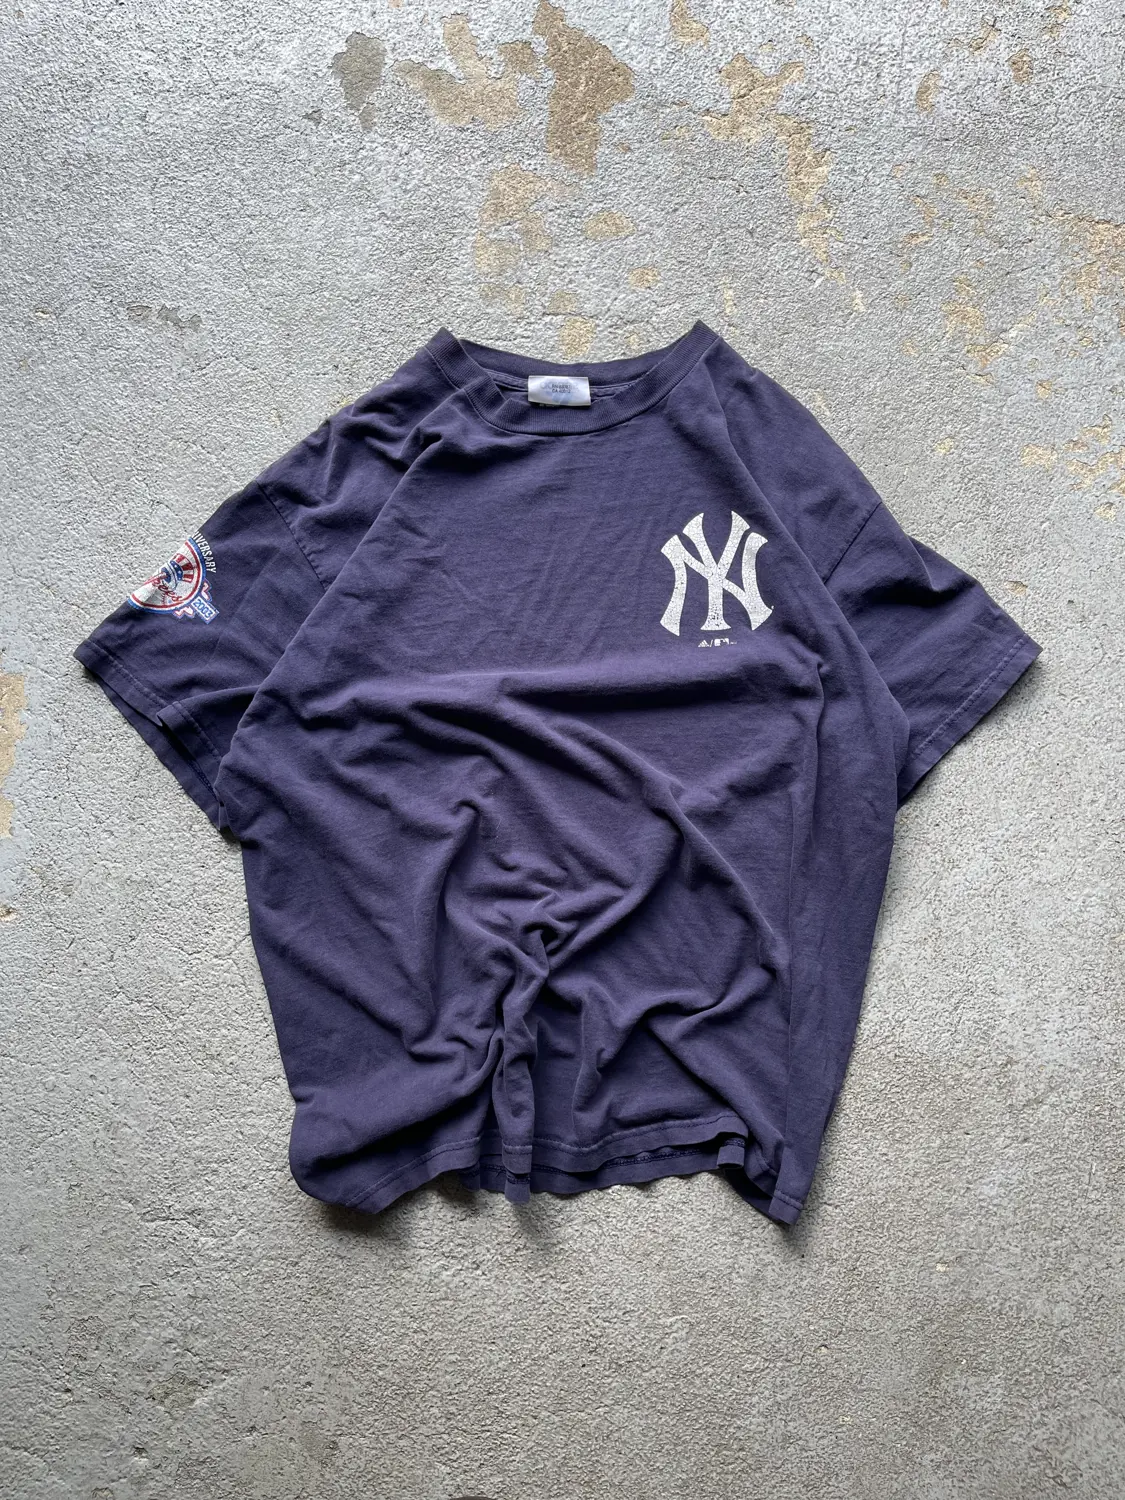 Vintage 2000s Yankees Tee